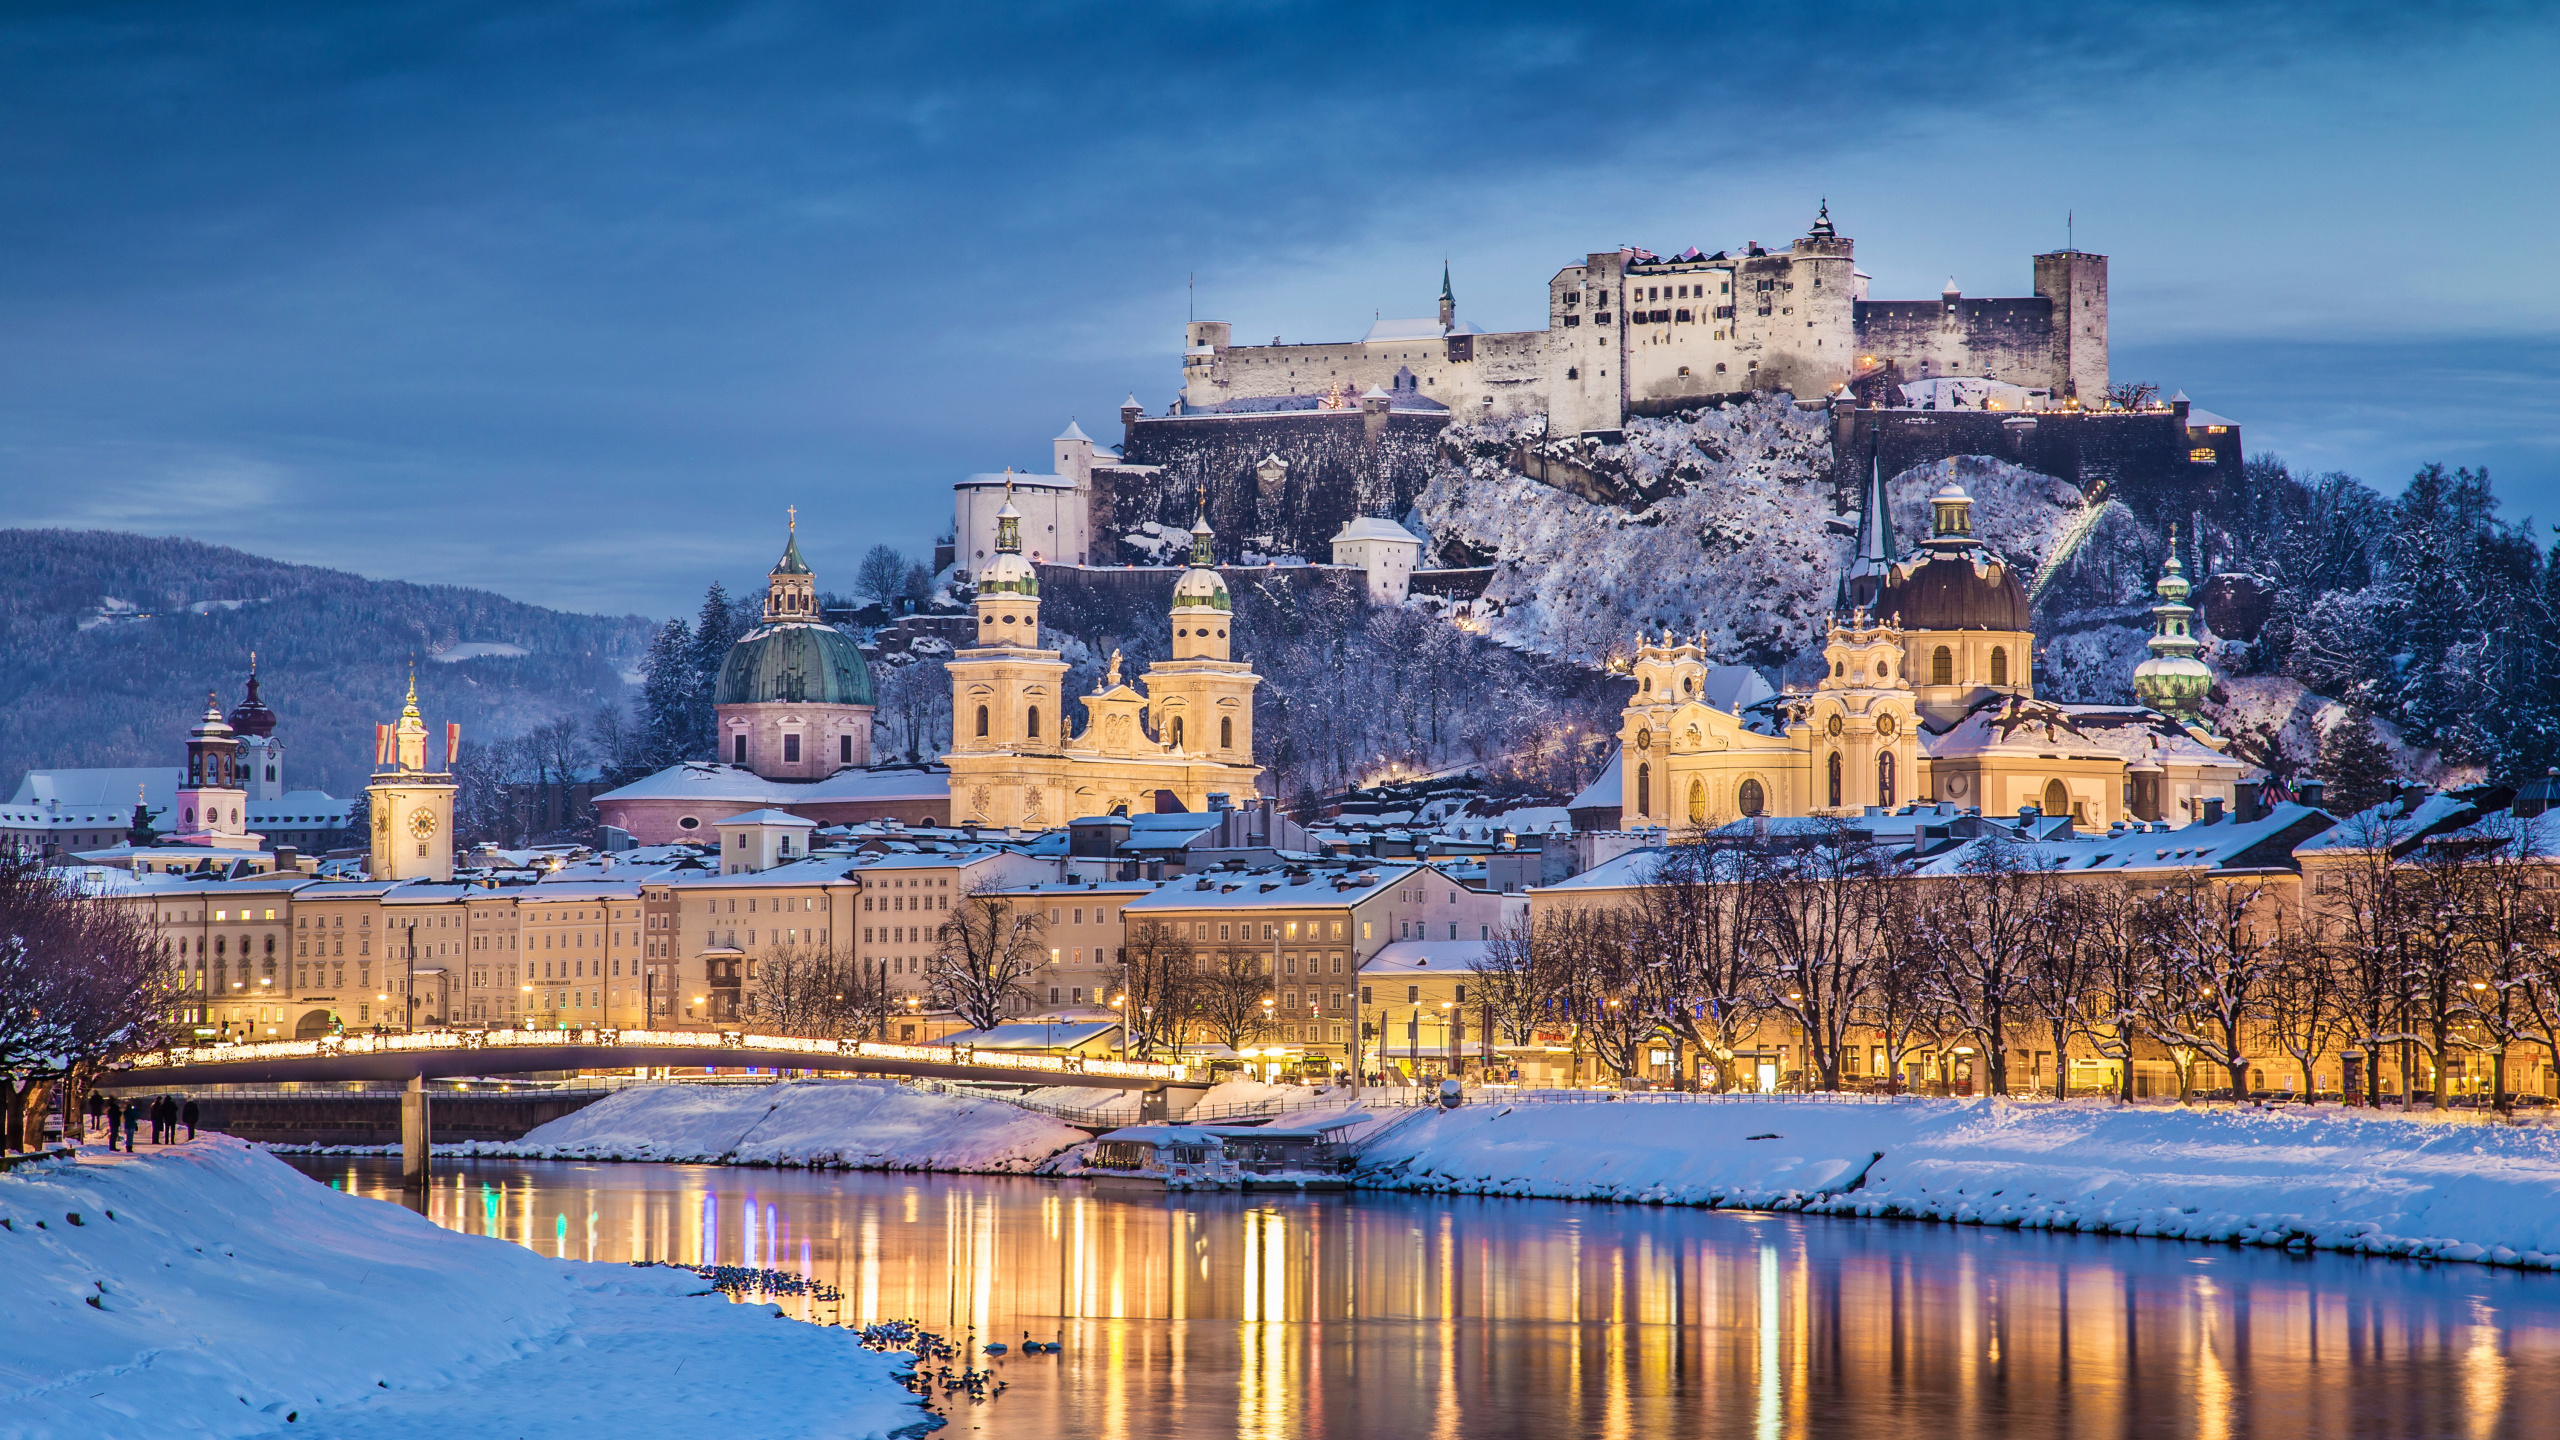 城堡, 冬天, 城市, 反射, 旅游景点 壁纸 2560x1440 允许